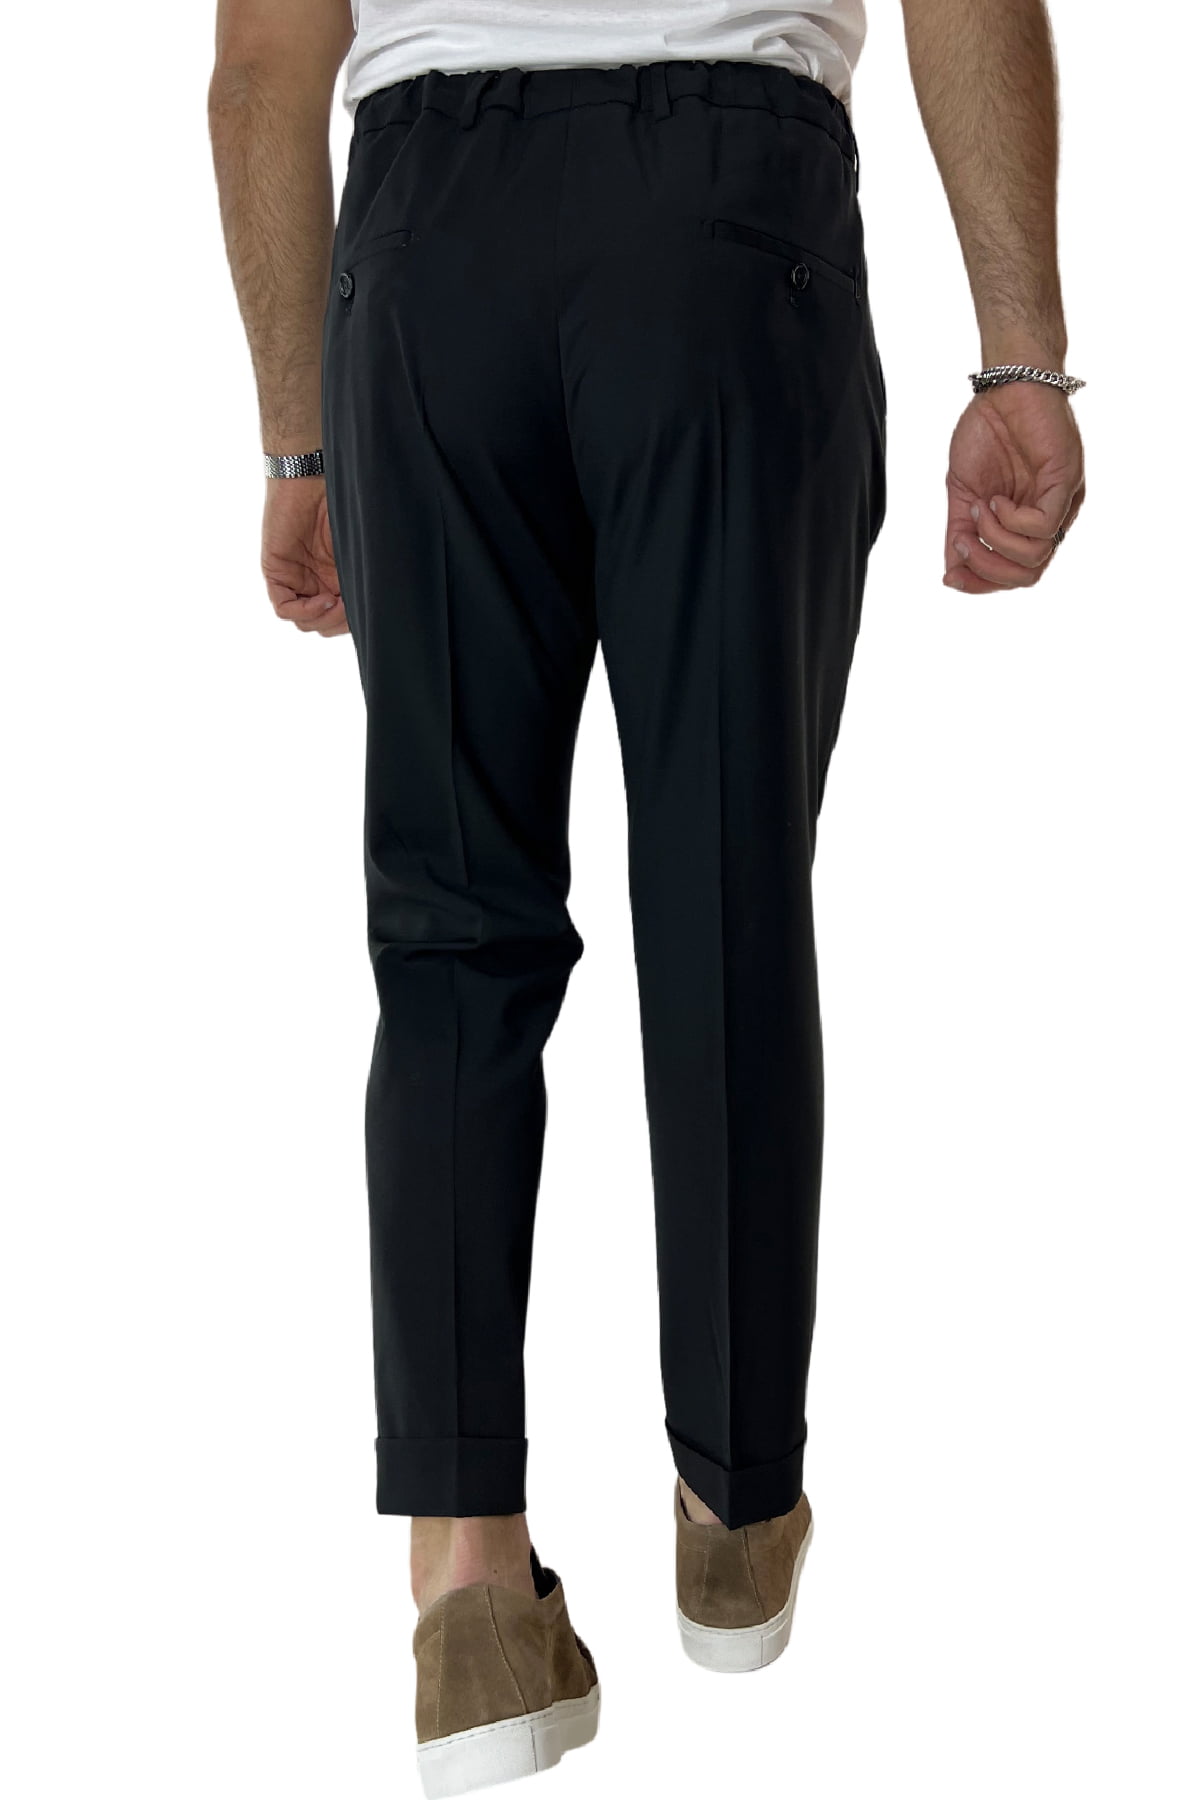 Pantalaccio uomo nero in fresco lana tasca america con doppia pence e laccio in vita risvolto 4cm